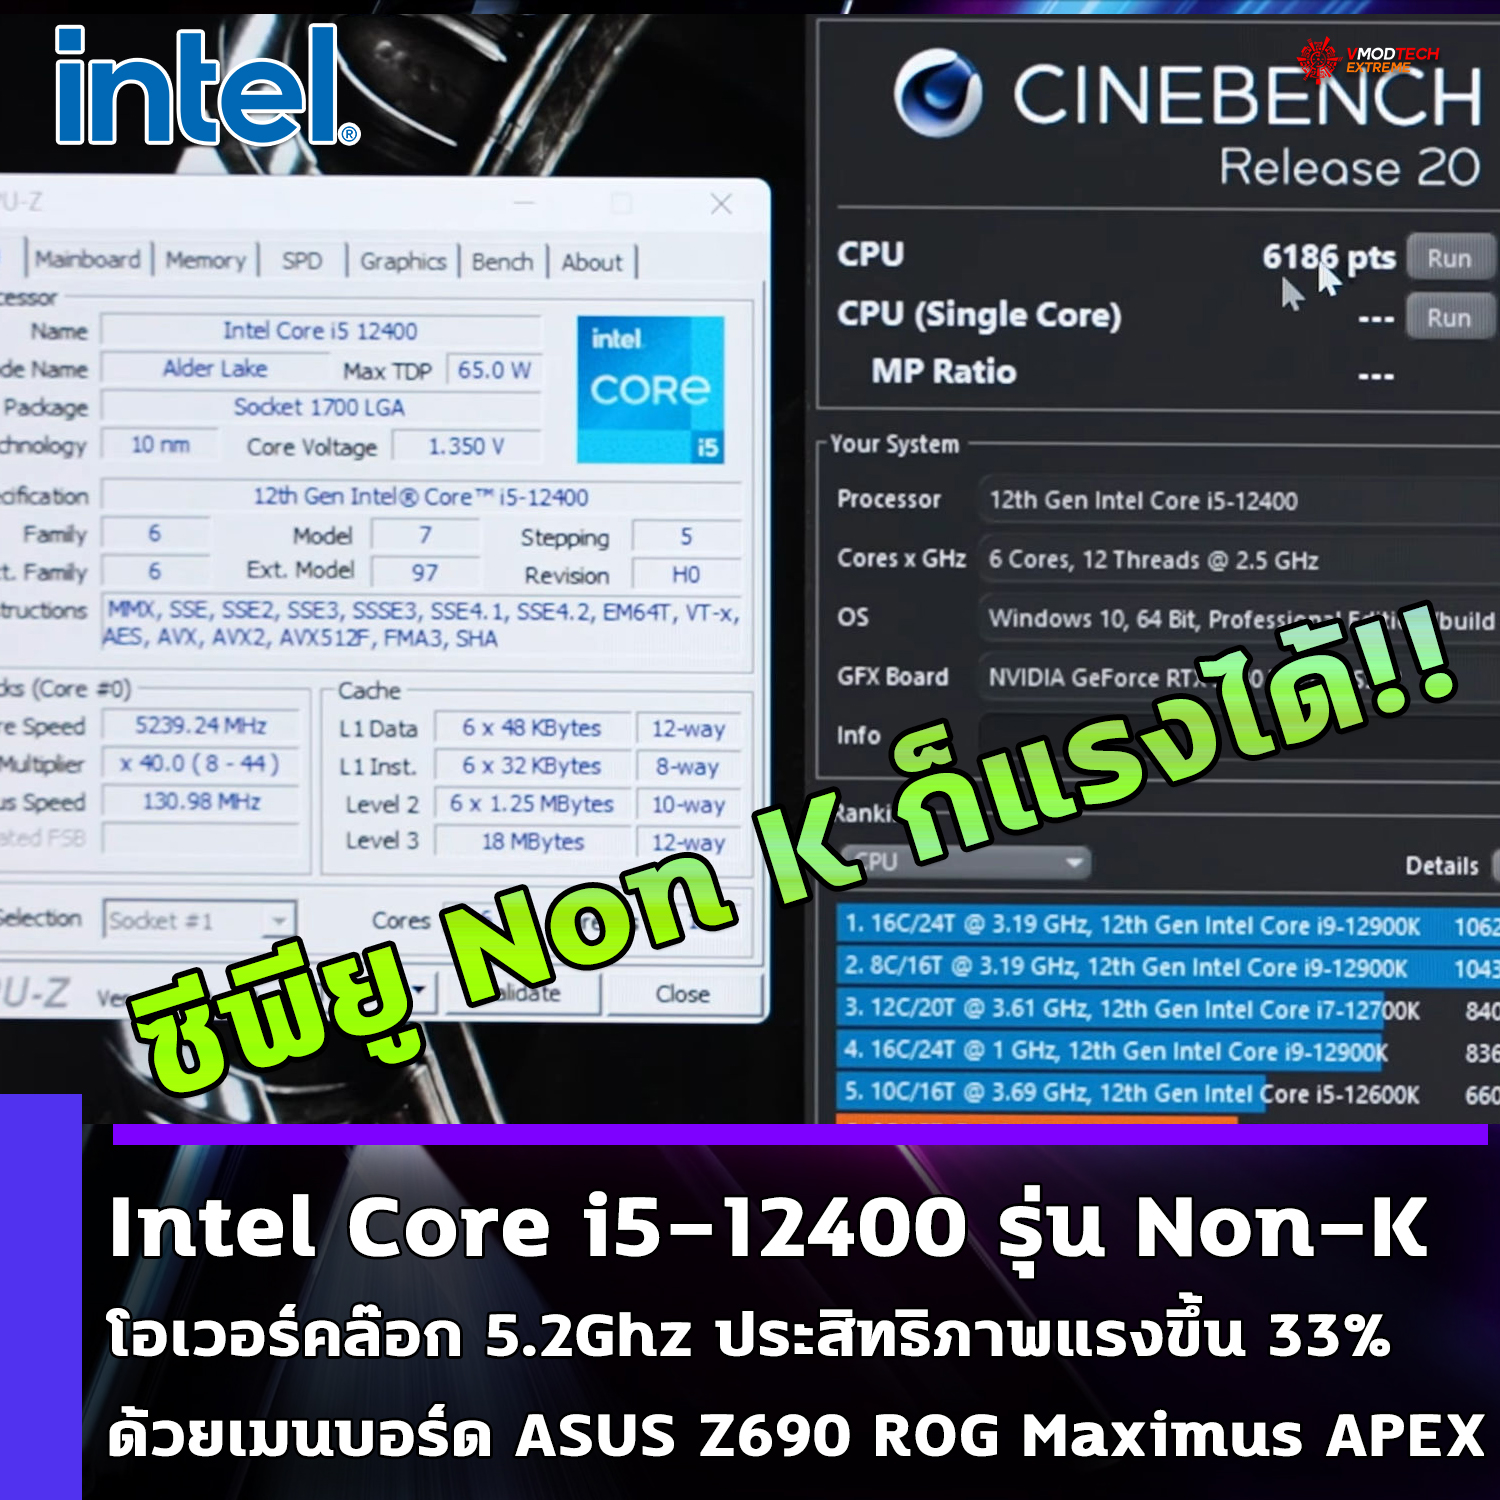 ปลดล๊อกความแรงซีพียู Intel Core i5-12400 รุ่น Non-K โอเวอร์คล๊อกไปที่ความเร็ว 5.2Ghz ประสิทธิภาพเรนเดอร์แรงขึ้น 33% ด้วยเมนบอร์ด ASUS Z690 ROG Maximus APEX